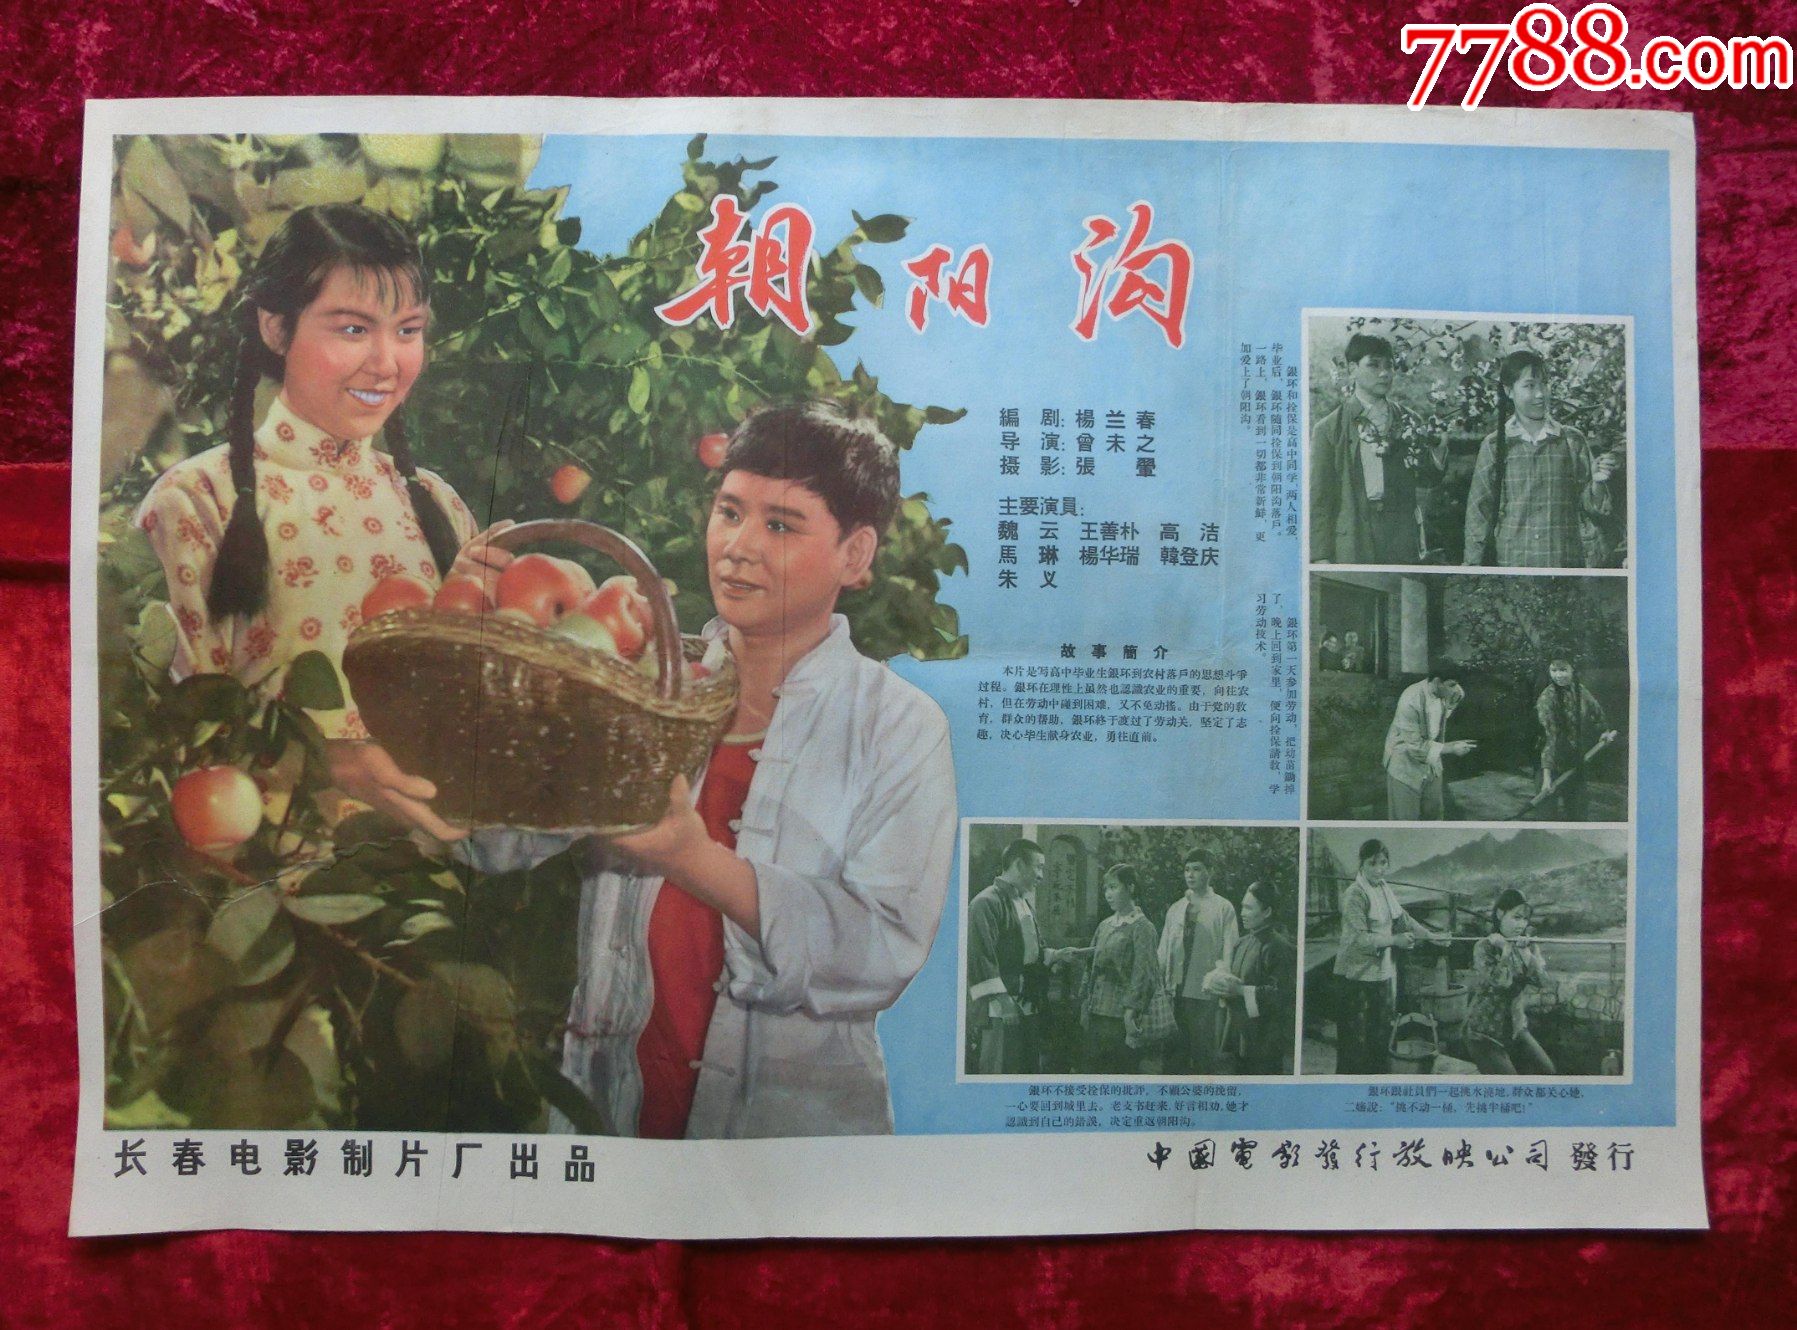 2开电影海报:朝阳沟(1963年上映)